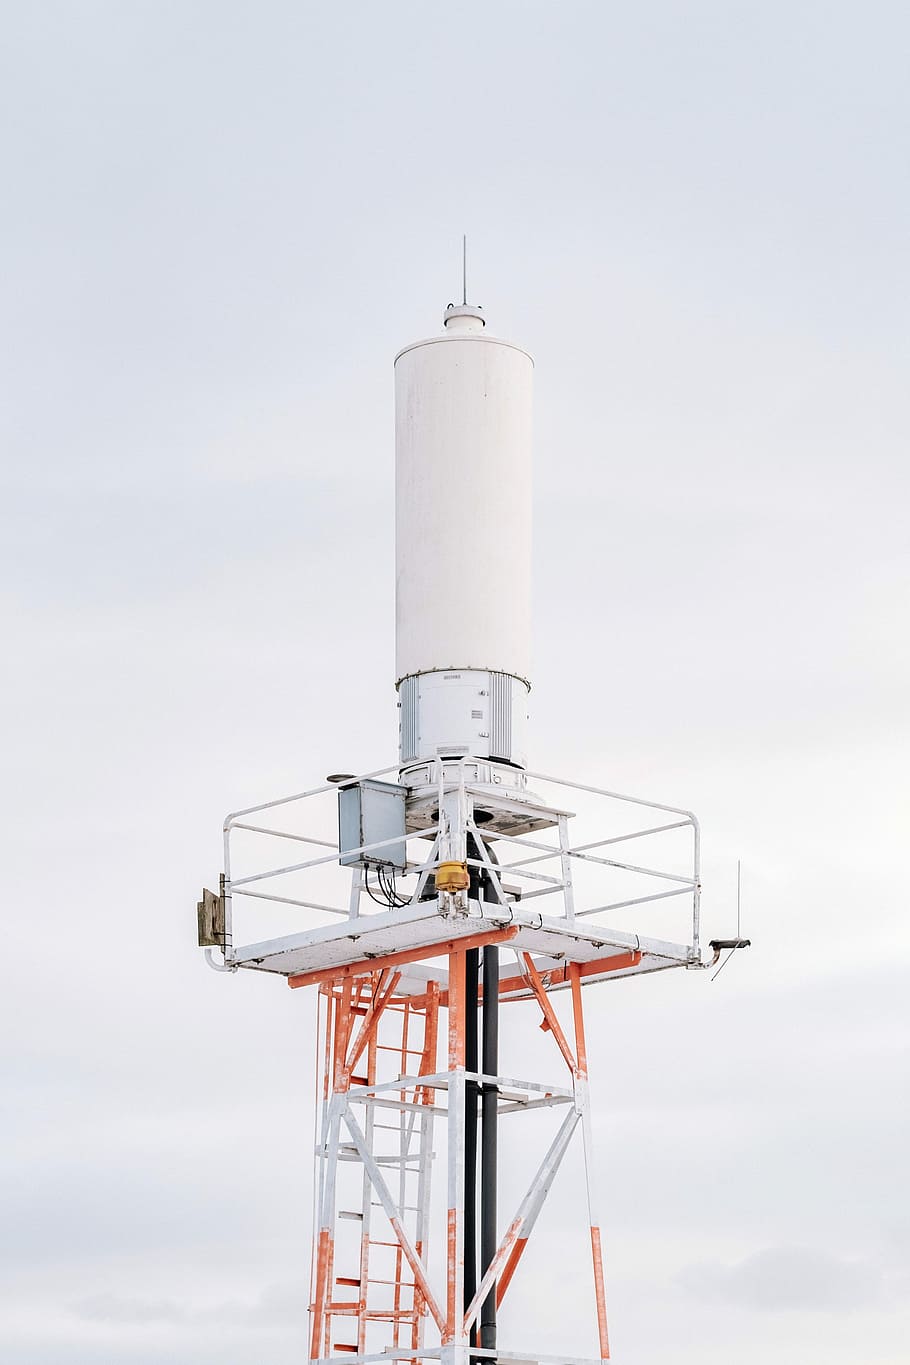 blanco, rojo, torre de transmisión, tecnología, torre, cielo, azul, industria, torre de comunicaciones, día